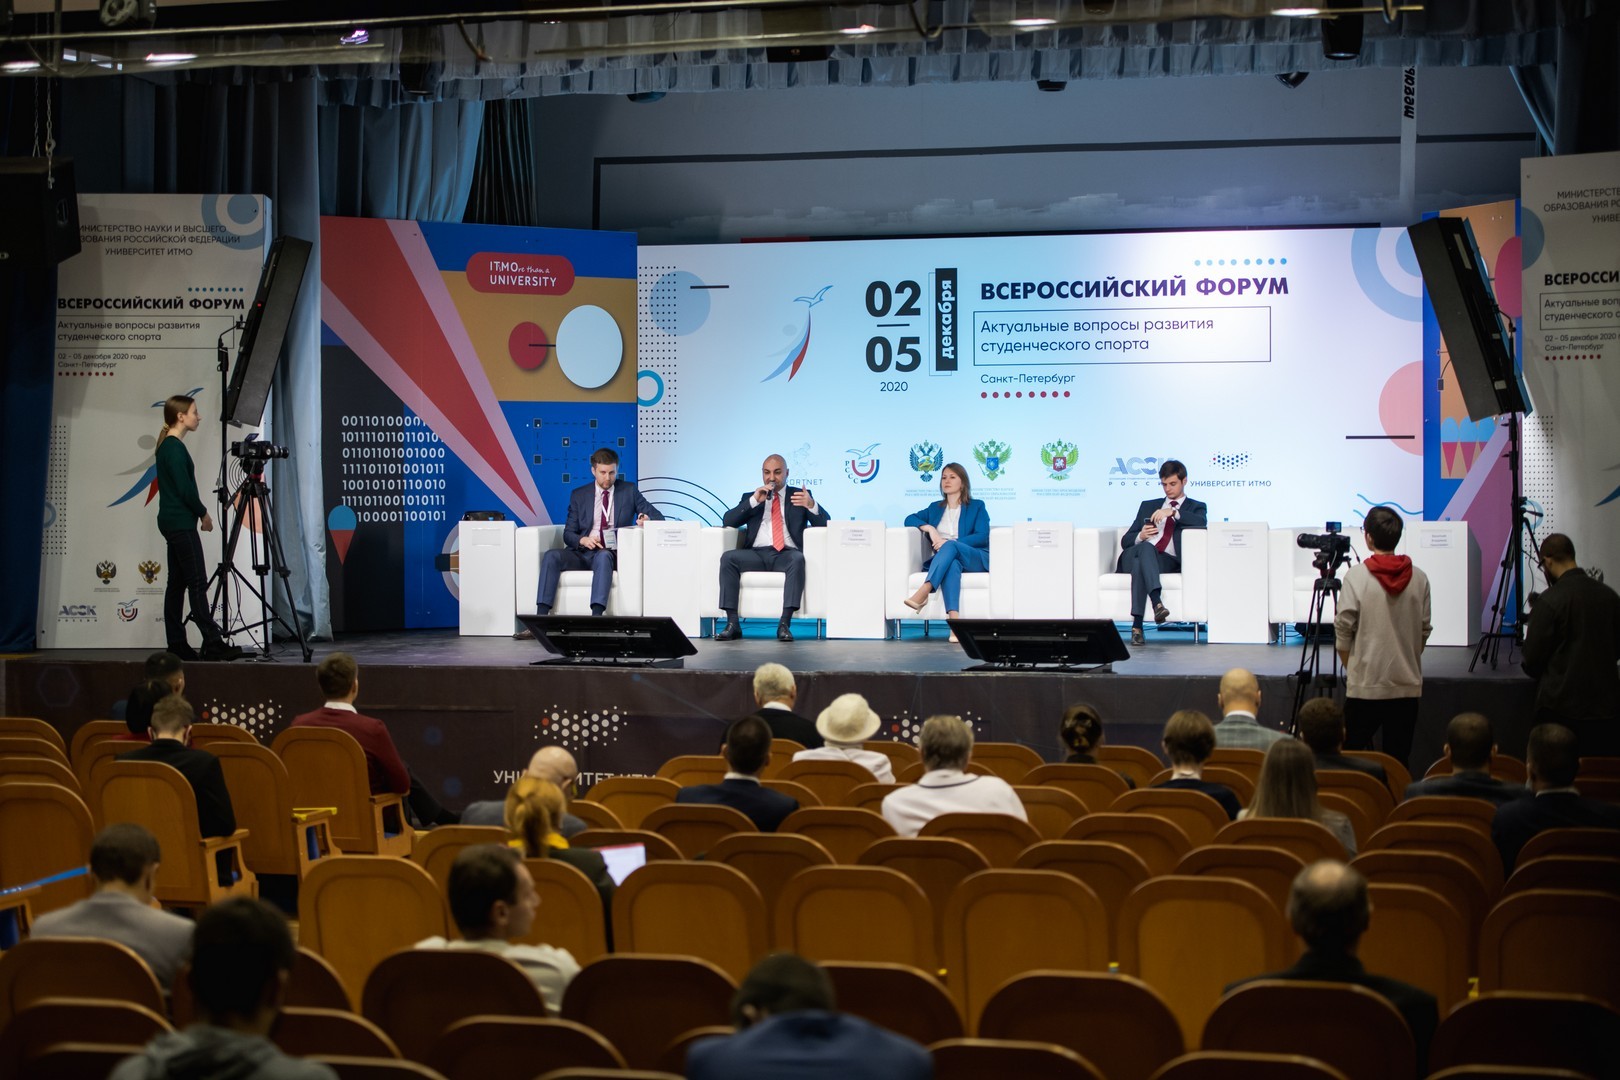 Всероссийский форум «Актуальные вопросы развития студенческого спорта»